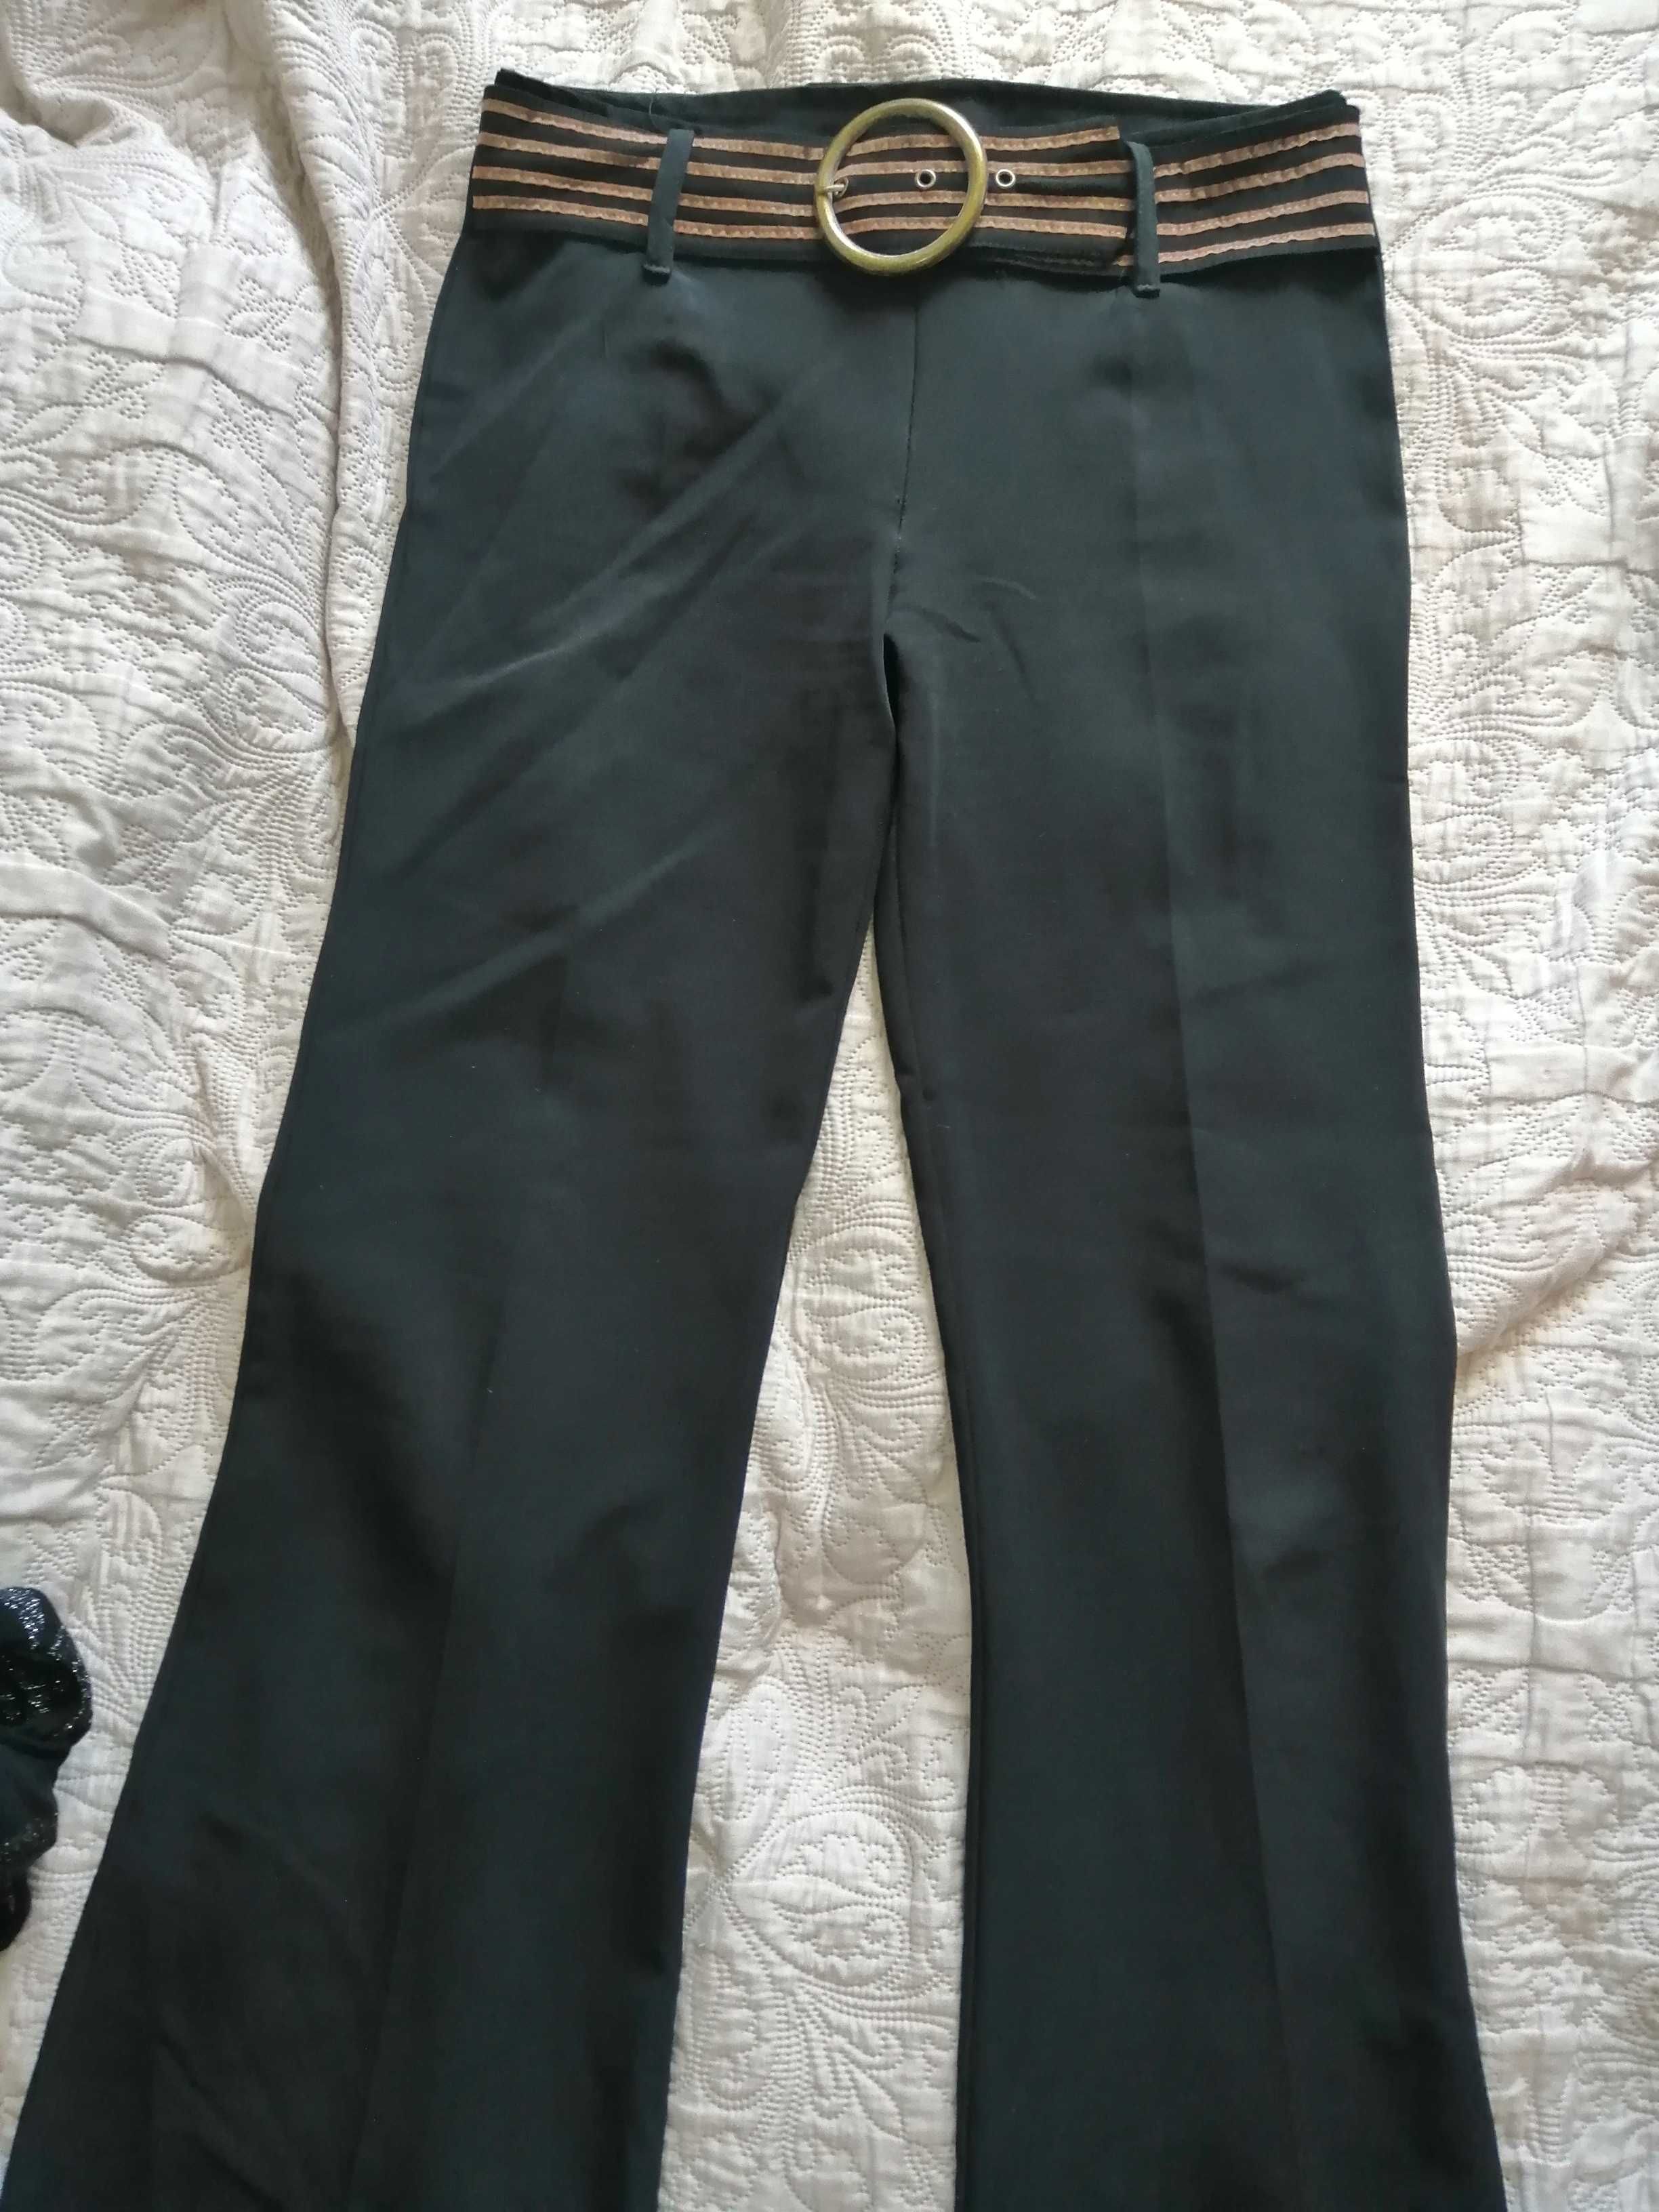 spodnie damskie czarne szerokie nogawki made in France 36/38